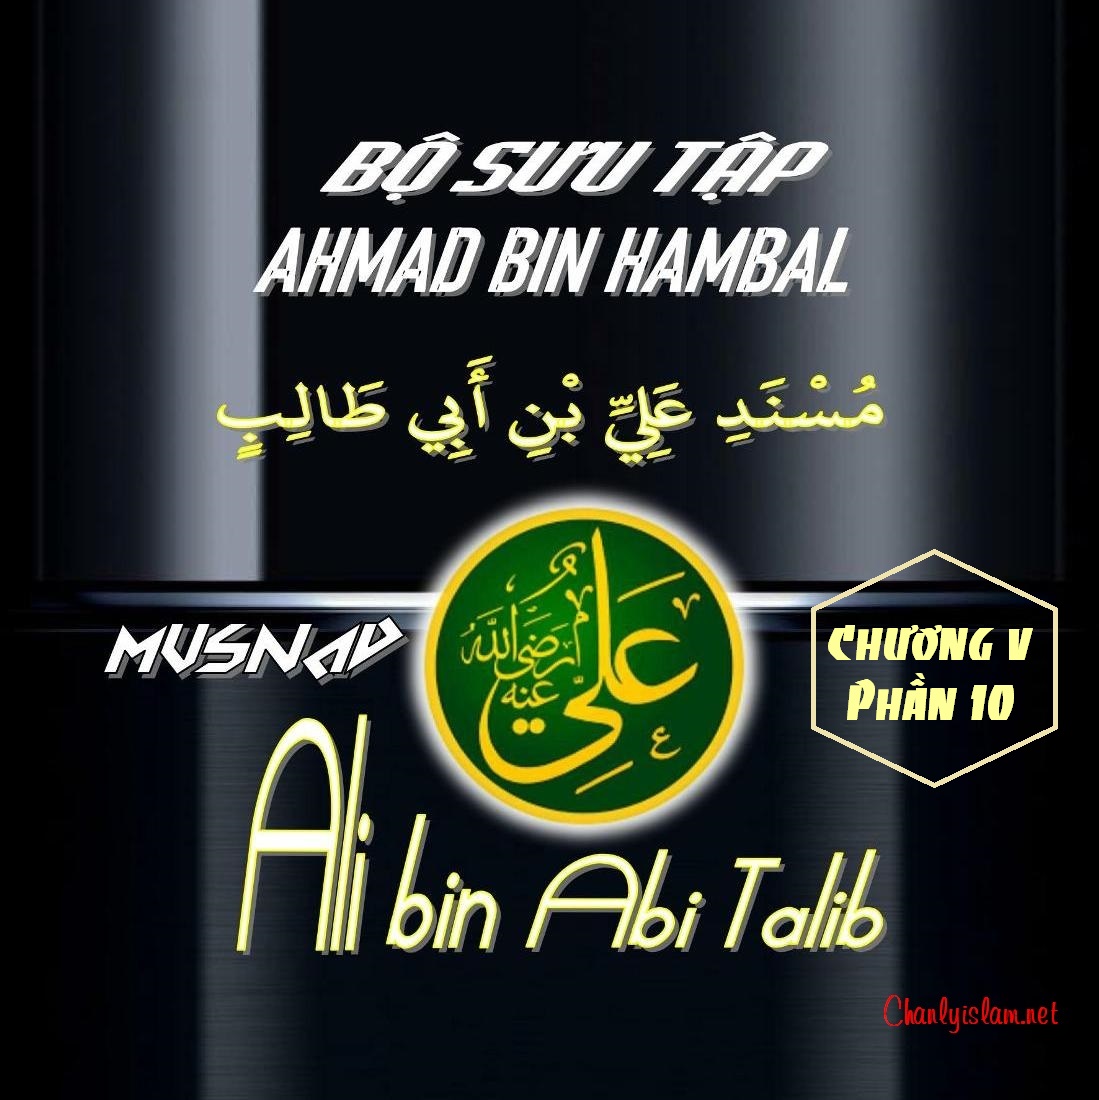 BỘ SƯU TẬP MUSNAD IMAM AHMAD IBN HANBAL - CHƯƠNG V - MUSNAD ALI BIN ABI TALIB -...